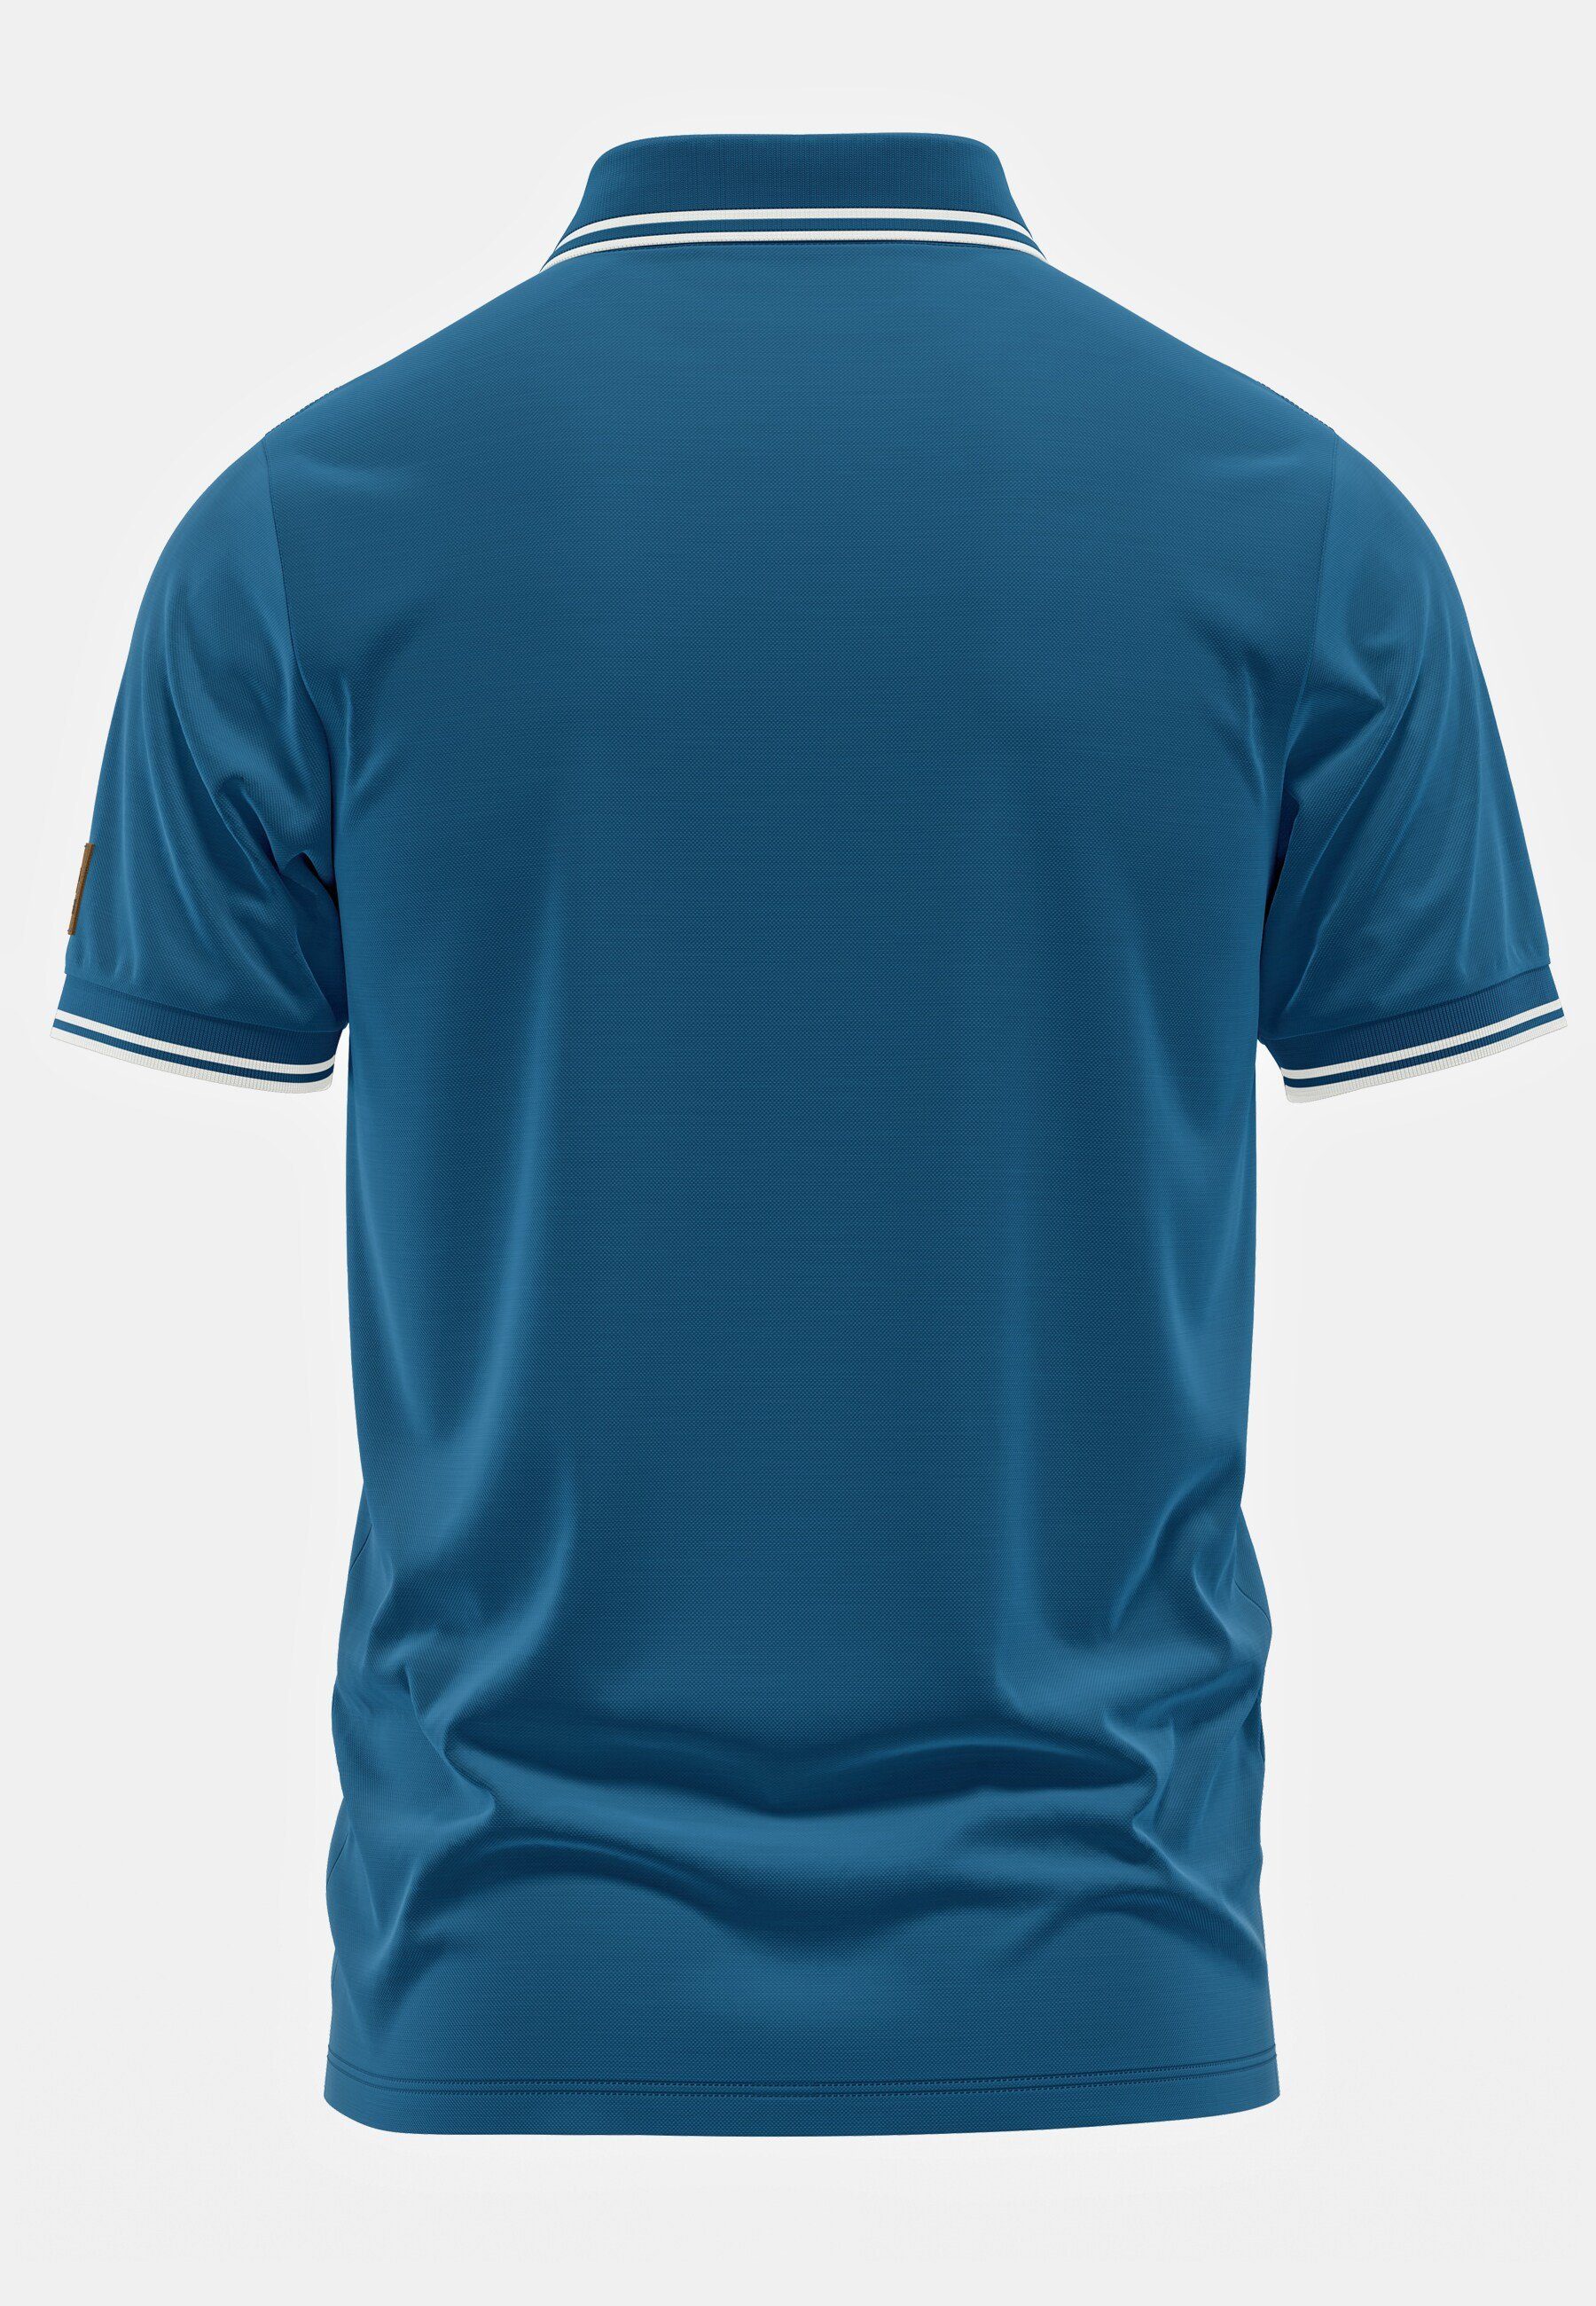 FORSBERG Magnuson blau FORSBERG Poloshirt